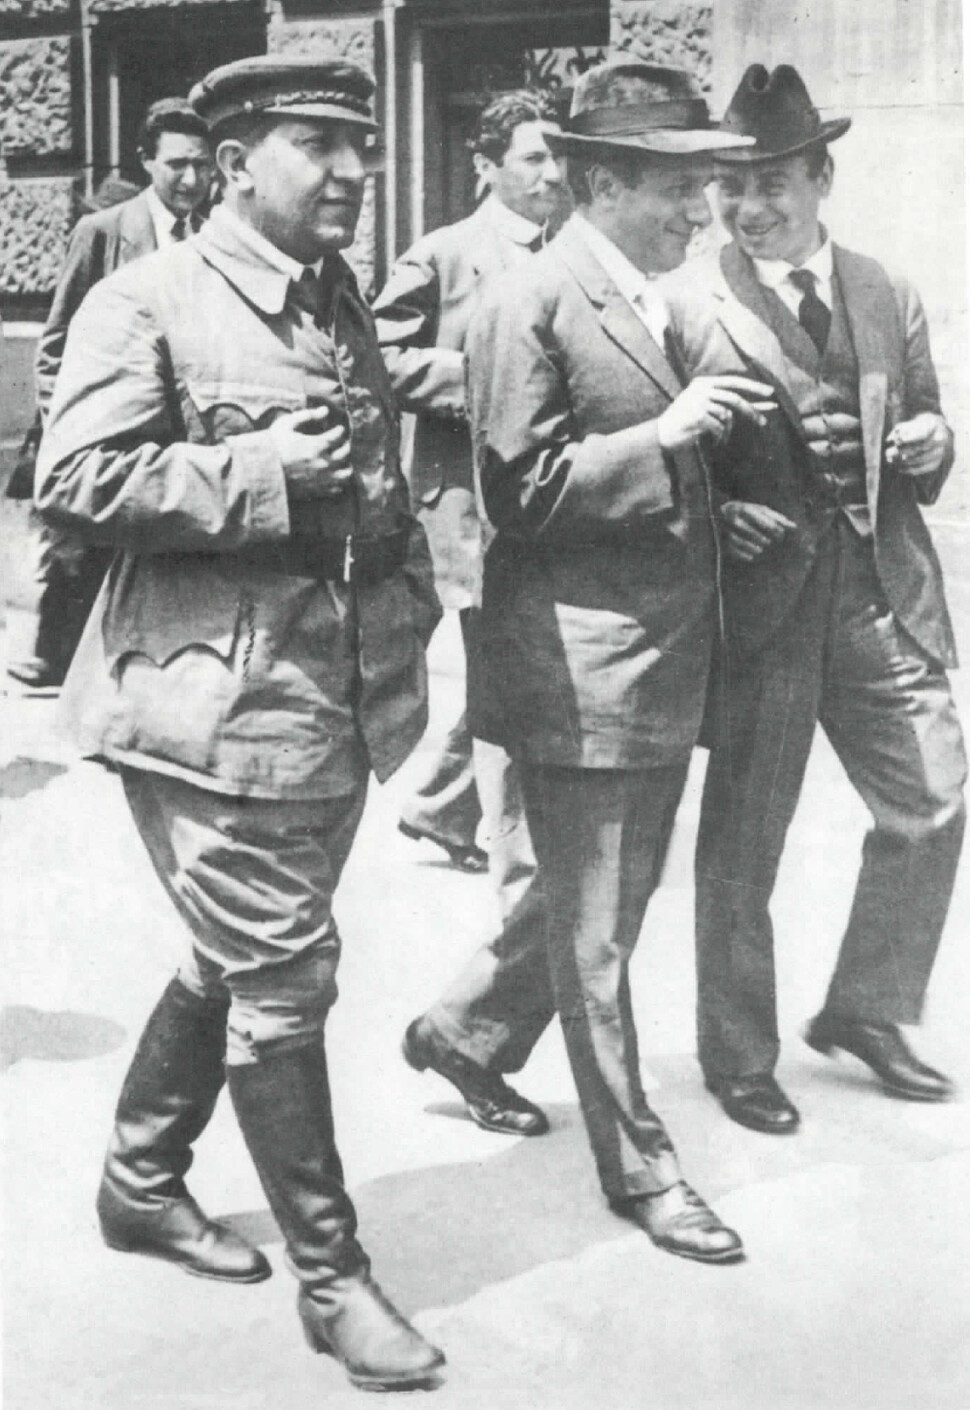 헝가리 혁명을 이끈 세 사람이 1919년 열린 헝가리공산당 대회장에서 걸어가고 있다. 가장 왼쪽이 존 페퍼다. 임경석 제공